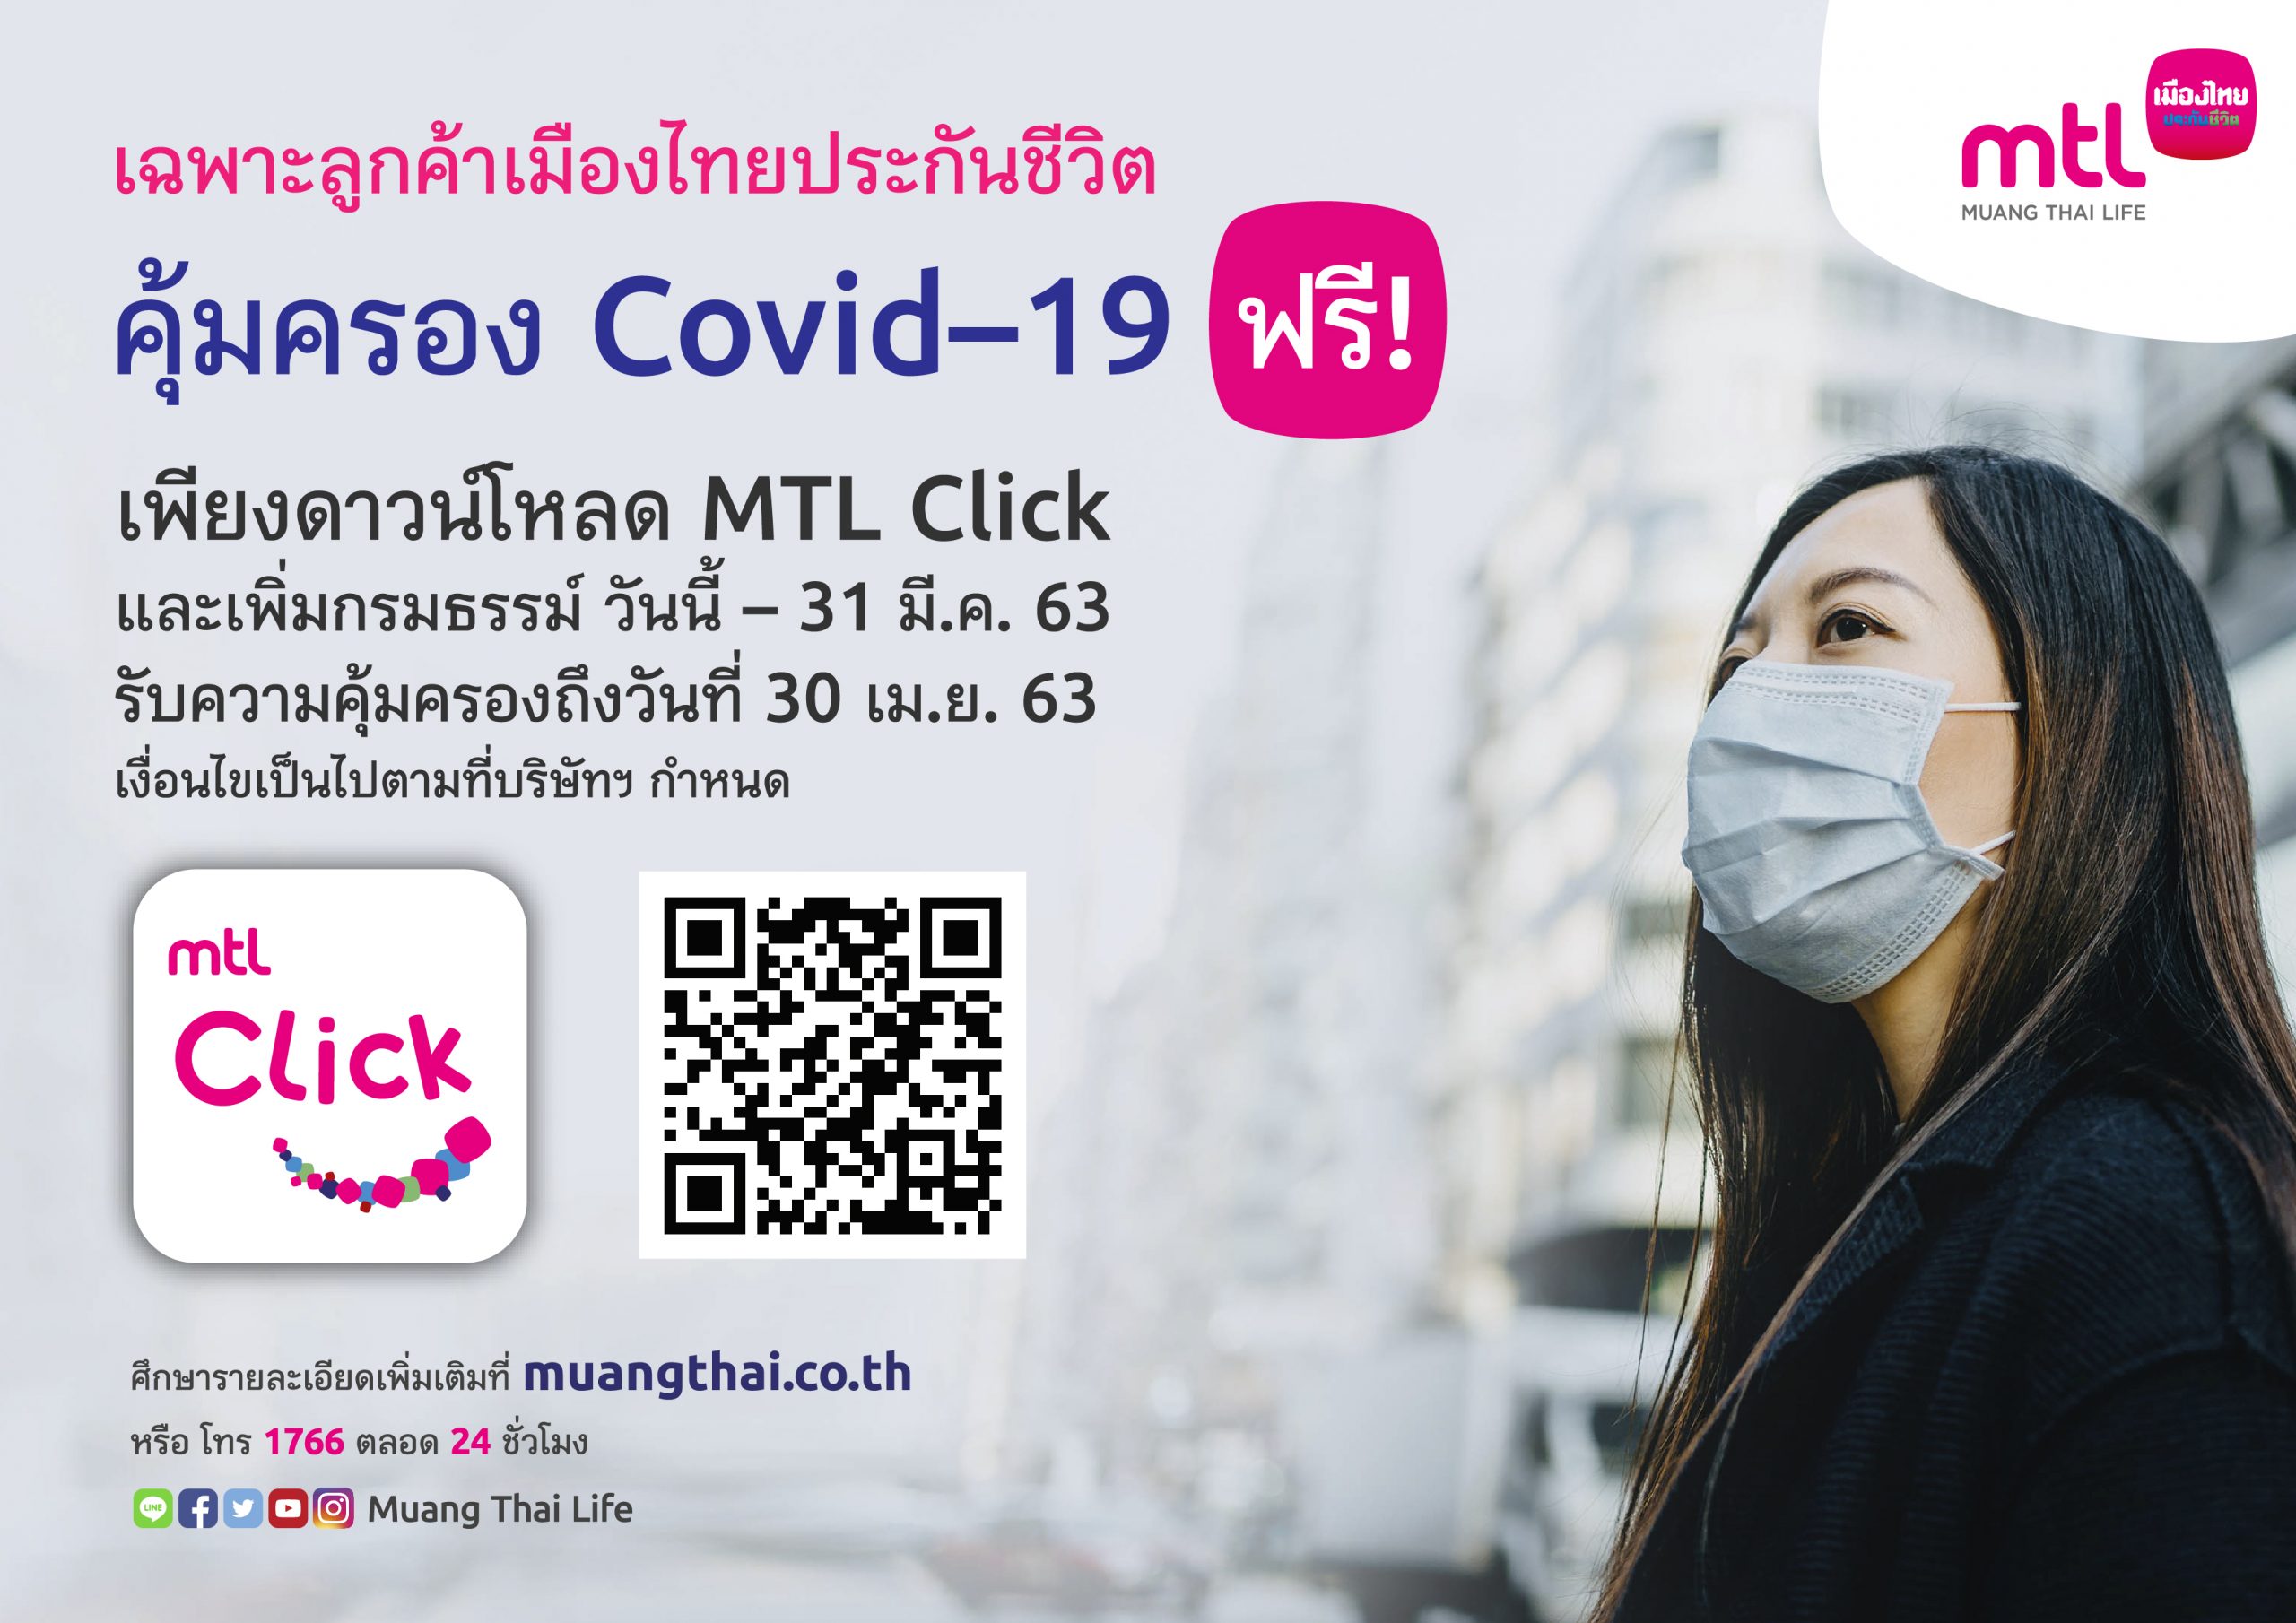 ลูกค้าเมืองไทยประกันชีวิต รับฟรี! ความคุ้มครองโรคโควิด-19 เพียงดาวน์โหลดและลงทะเบียนใช้งาน แอปพลิเคชัน MTL Click